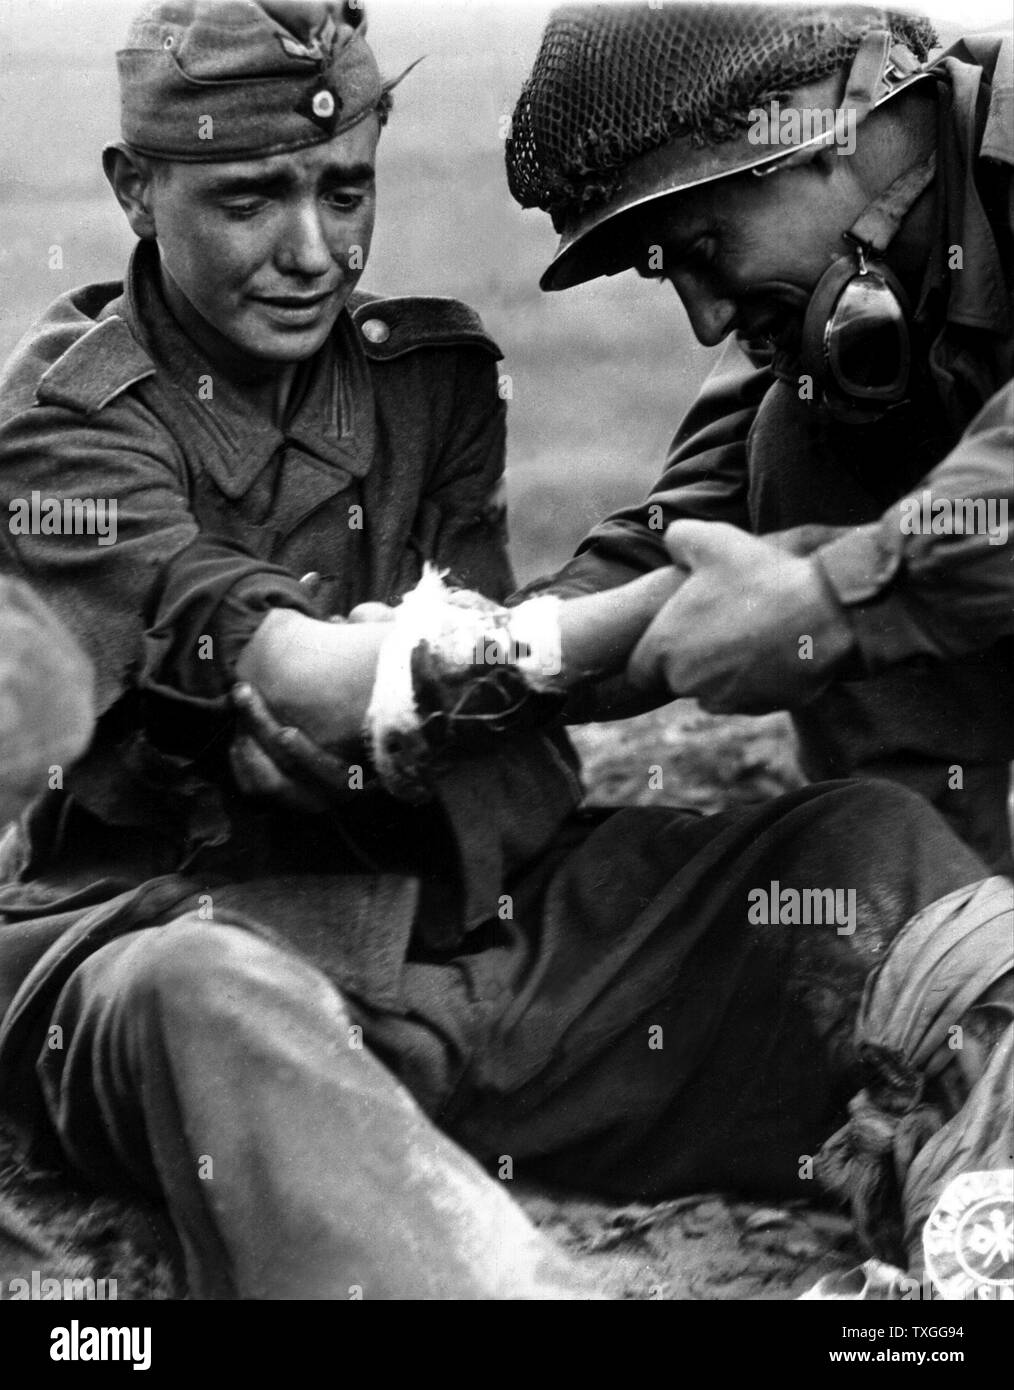 Une capture, teenage, soldat allemand pleure comme il est traité pour ses blessures par un soldat américain qu'ils attendent un medic pour arriver. De Cherbourg, France. Banque D'Images